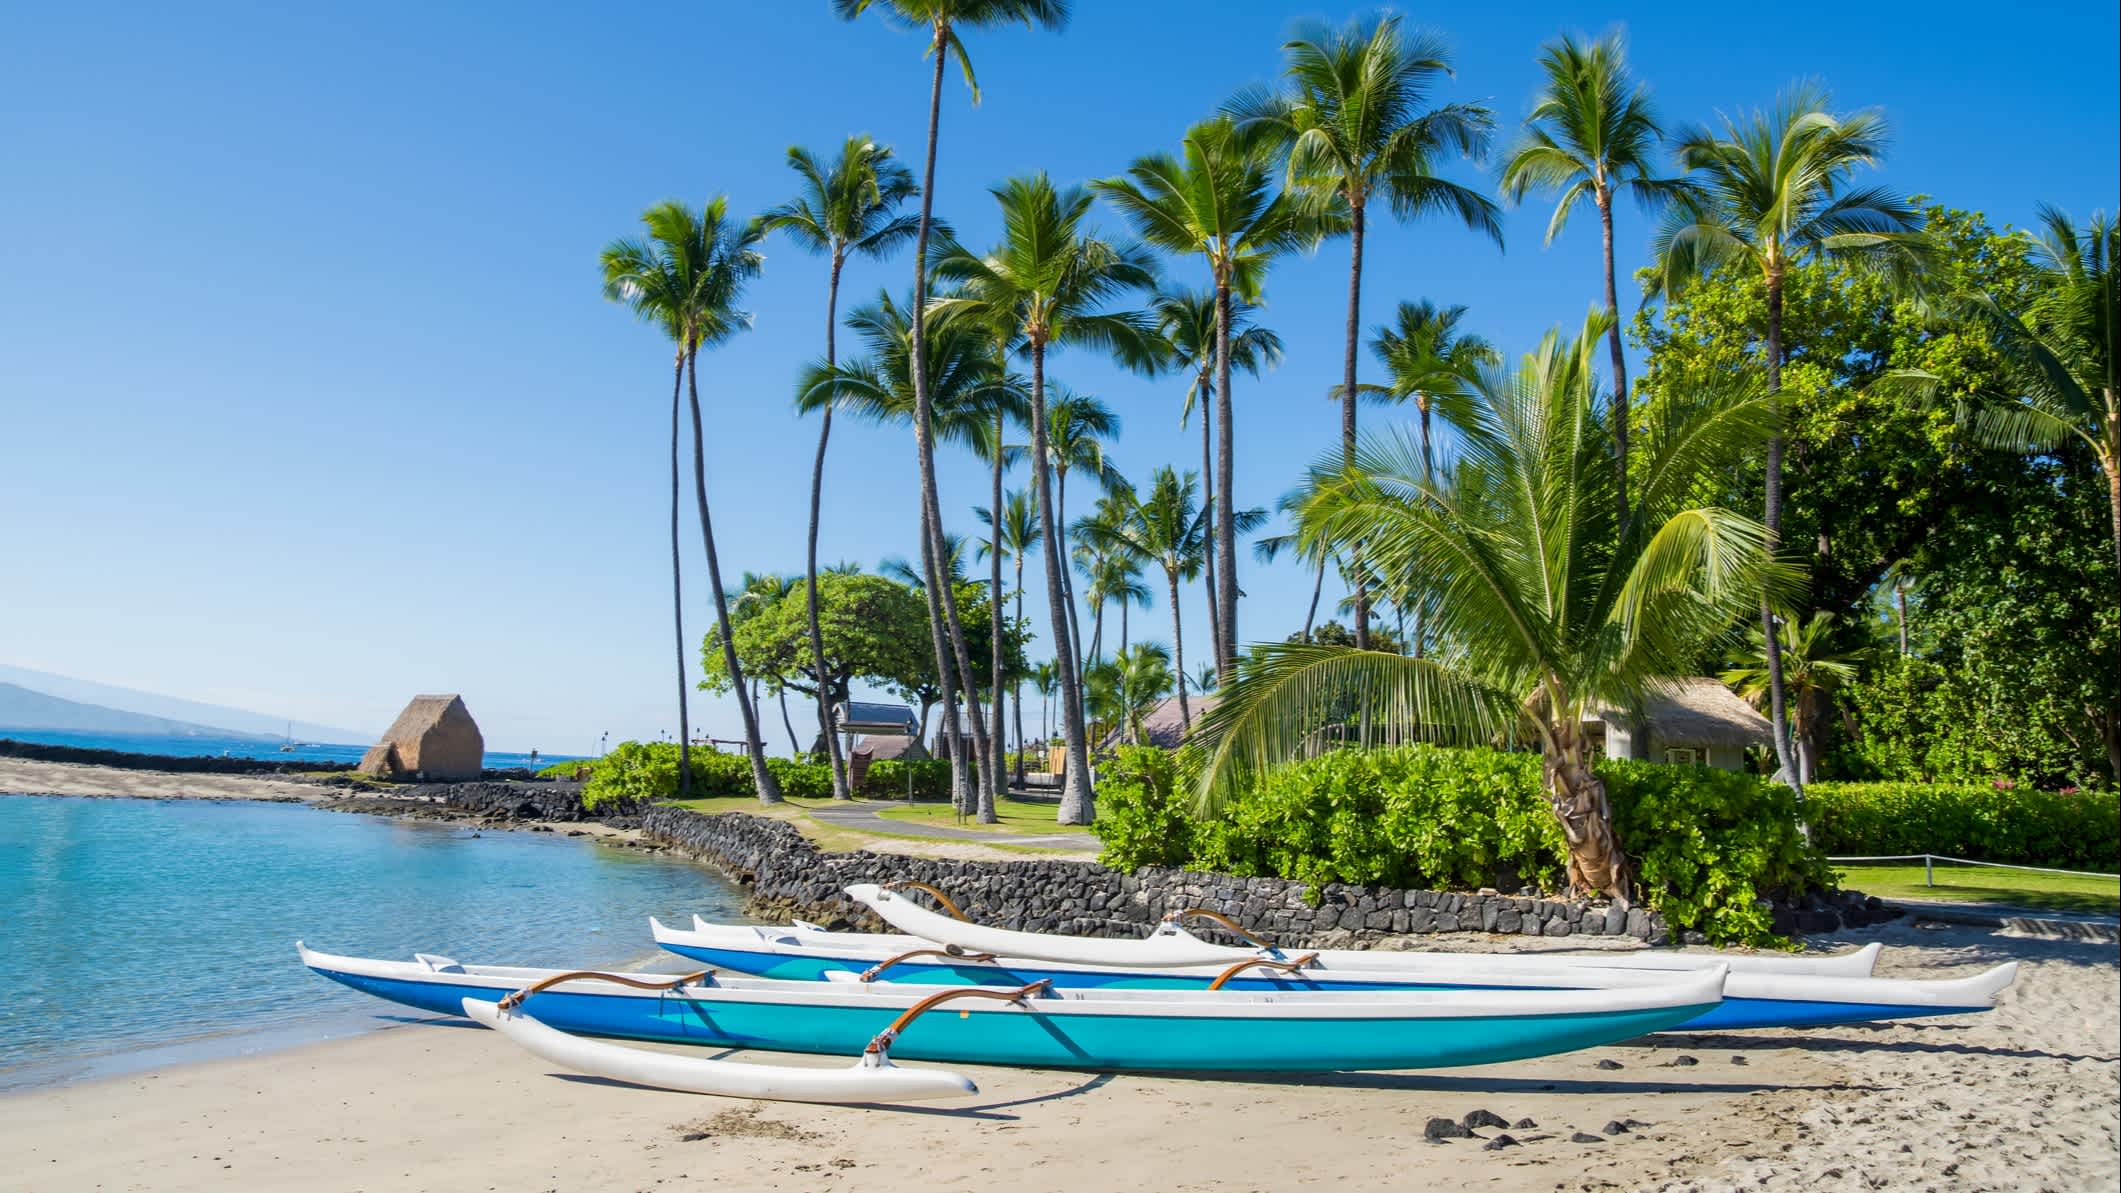 Hawaï, Grande Île, canoës hawaïens sur la plage de Kamakahonu à Kailua-Kona.

